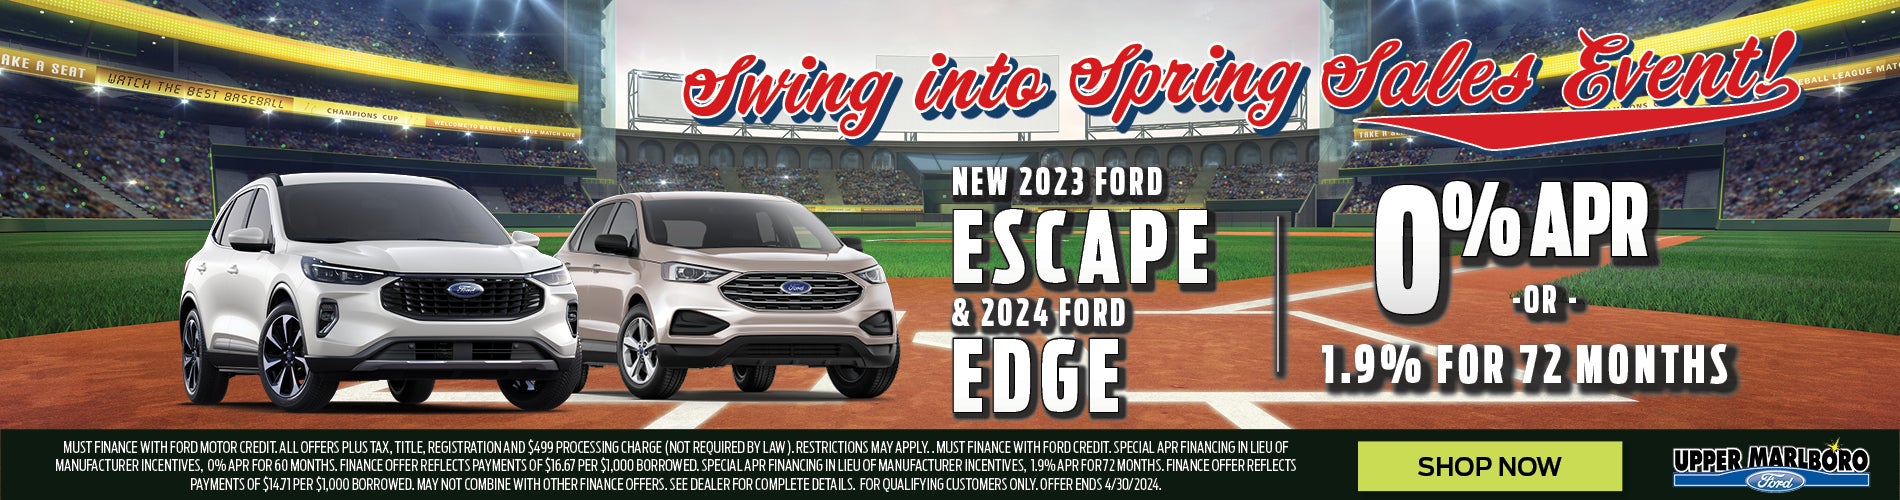 New 2023 Ford Escape & 2024 Ford Edge